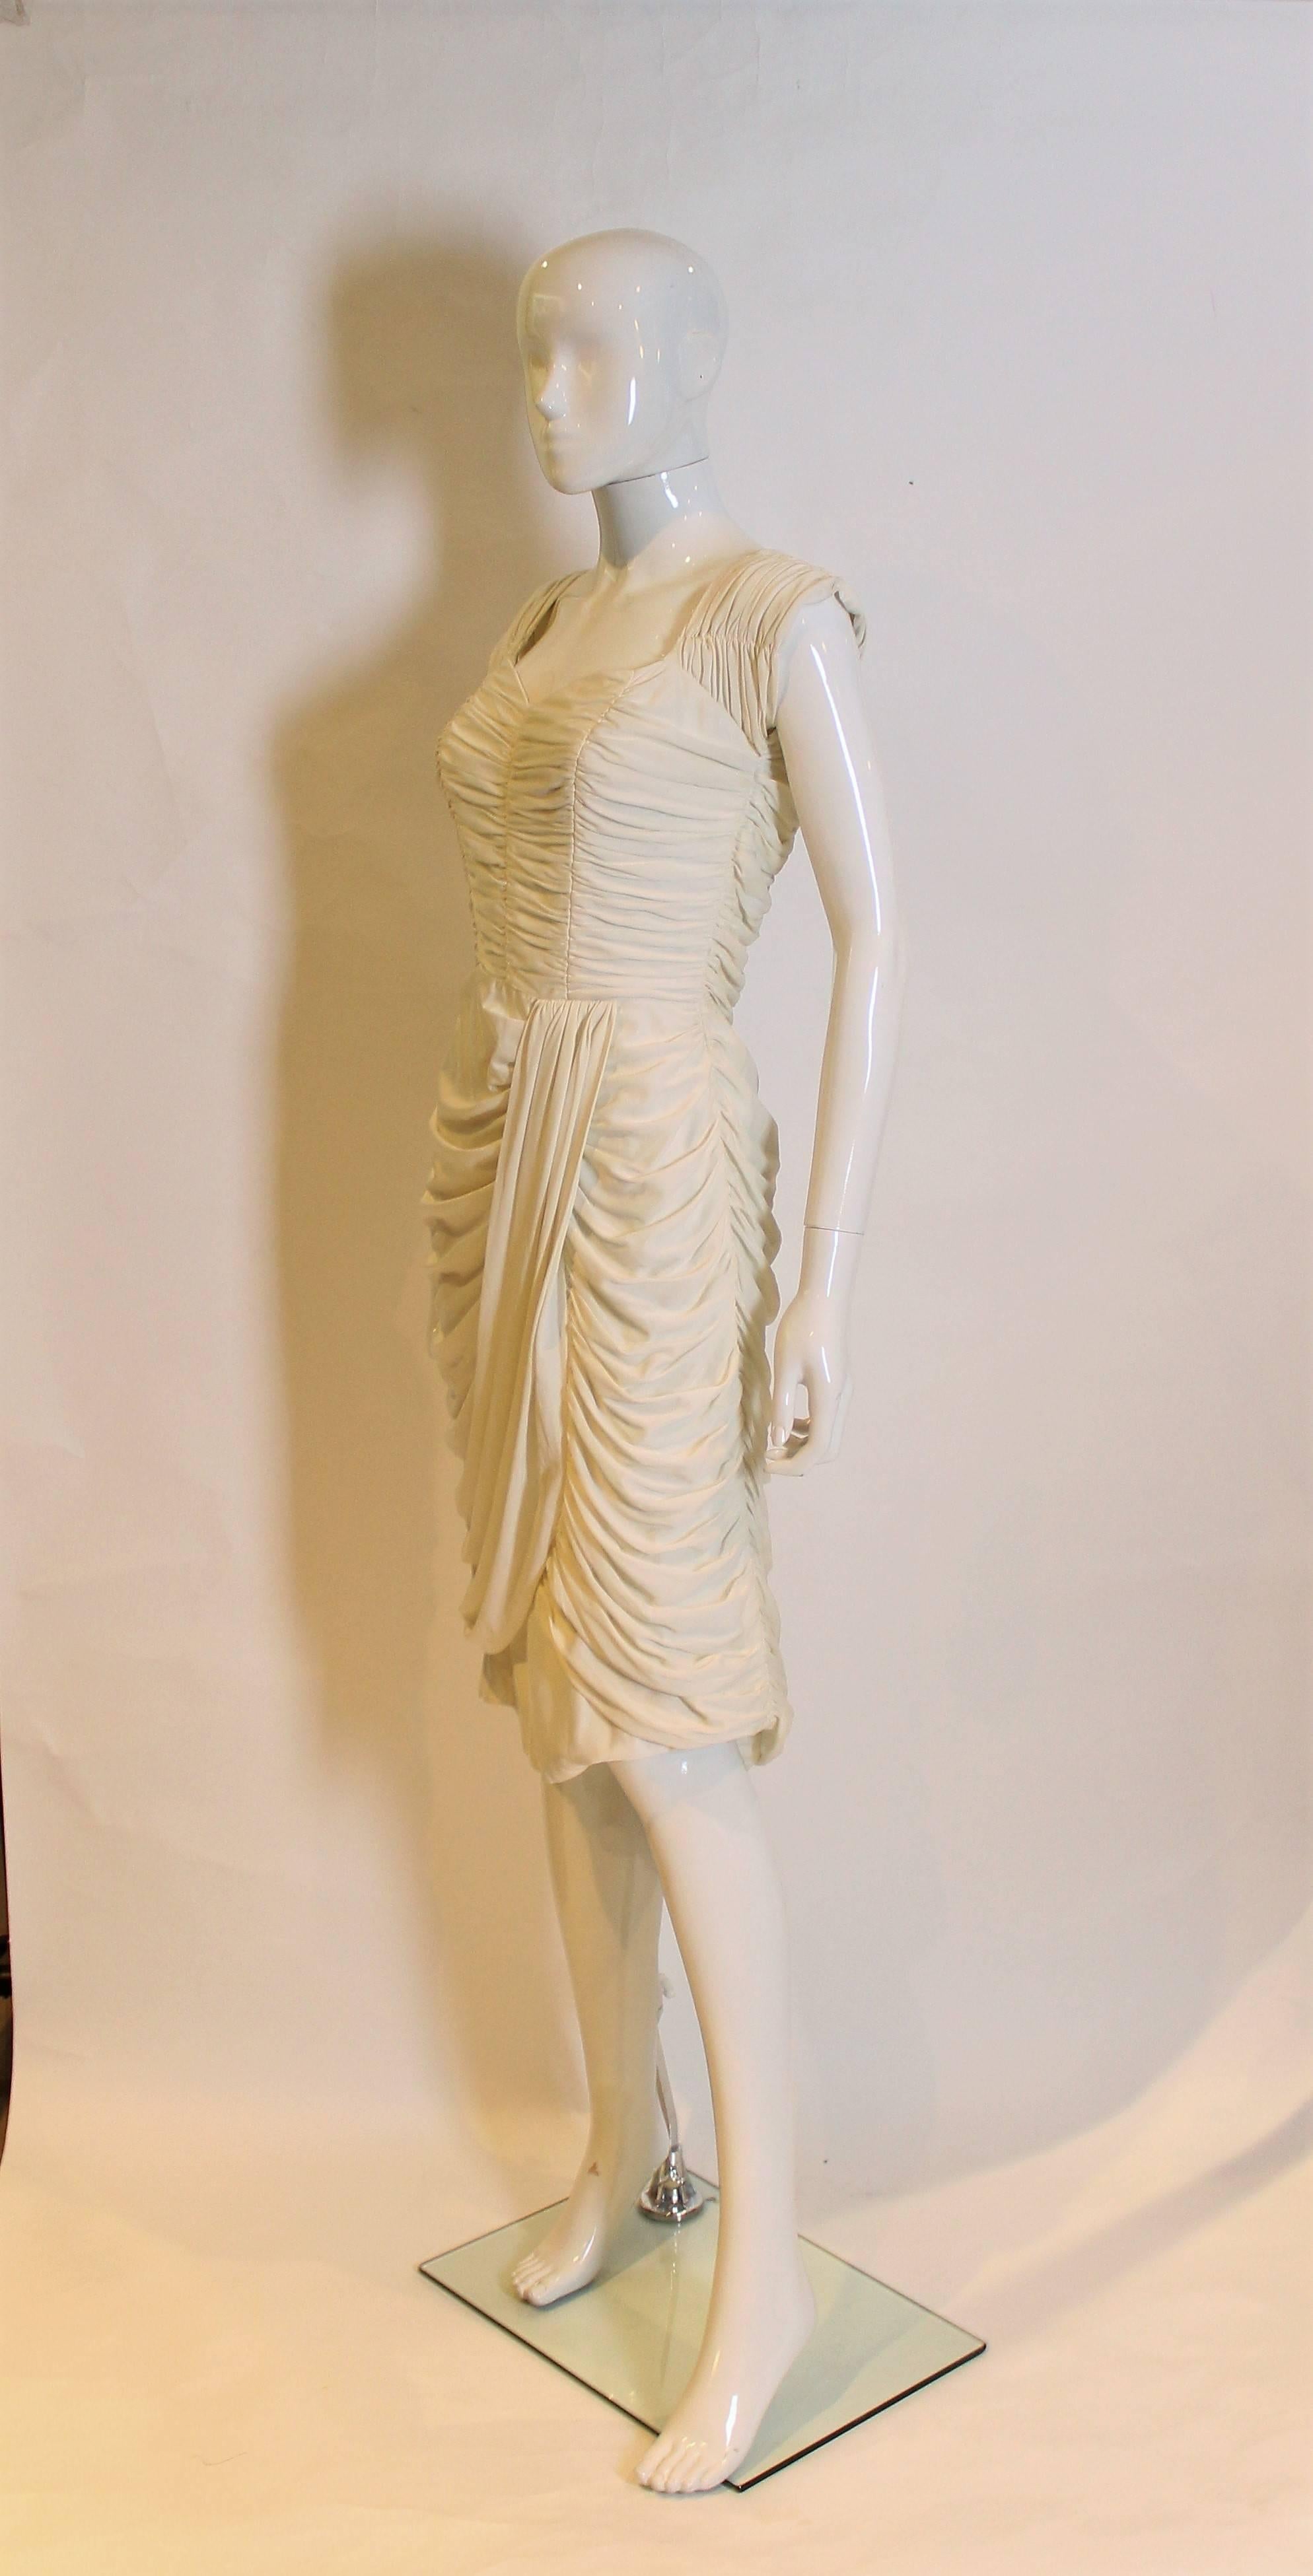 Ein weißes Cocktailkleid mit Raffungen und Falten, vielleicht ein Hochzeitskleid?
Das Kleid hat einen herzförmigen Ausschnitt und einen umgeschlagenen Rock,  zentraler Rückenreißverschluss und ist vollständig gefüttert.